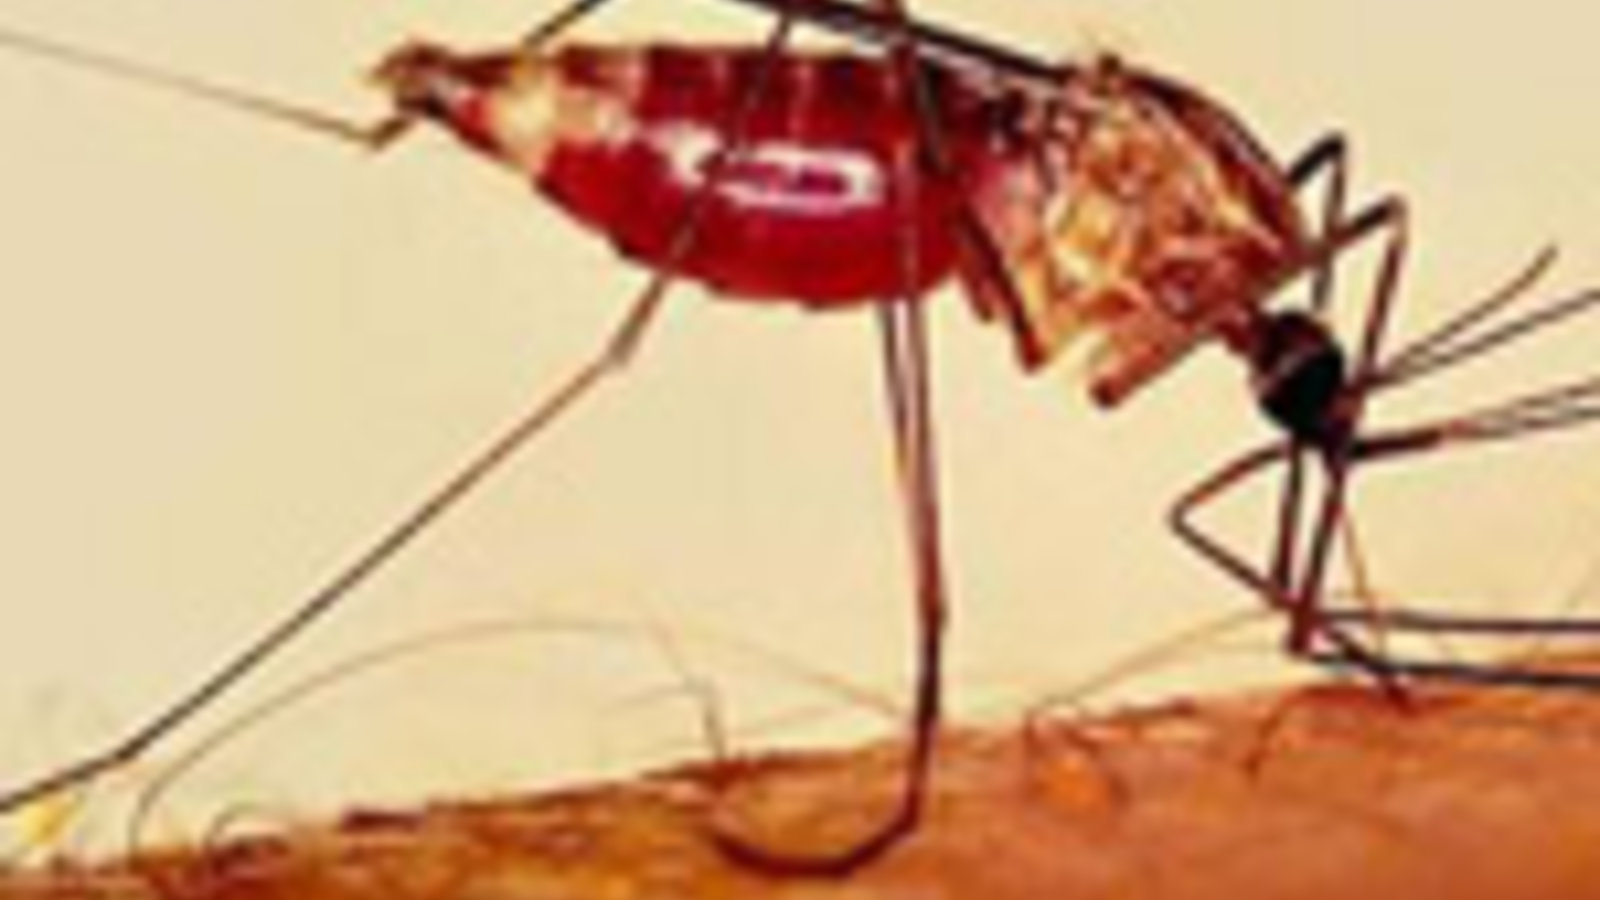 malaria2.jpg